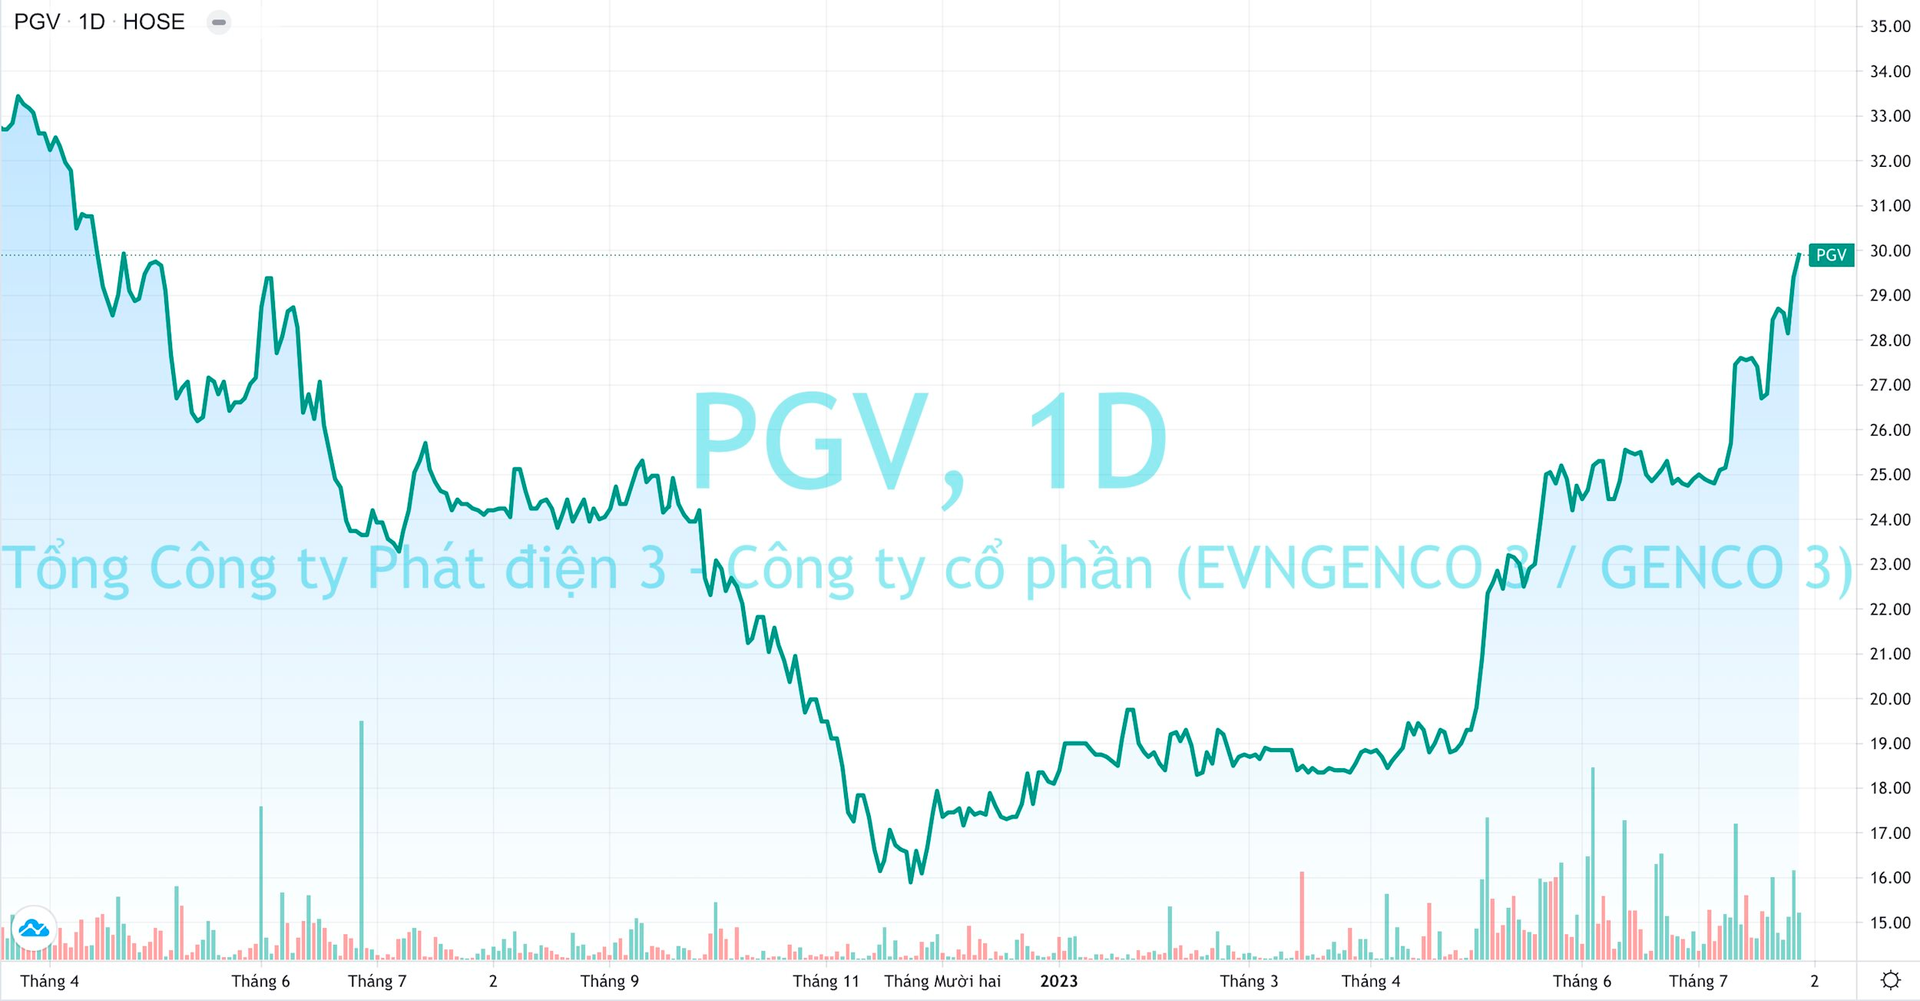 Doanh thu lập kỷ lục, EVNGENCO3 (PGV) báo lãi quý 2 tăng 91% - Ảnh 4.